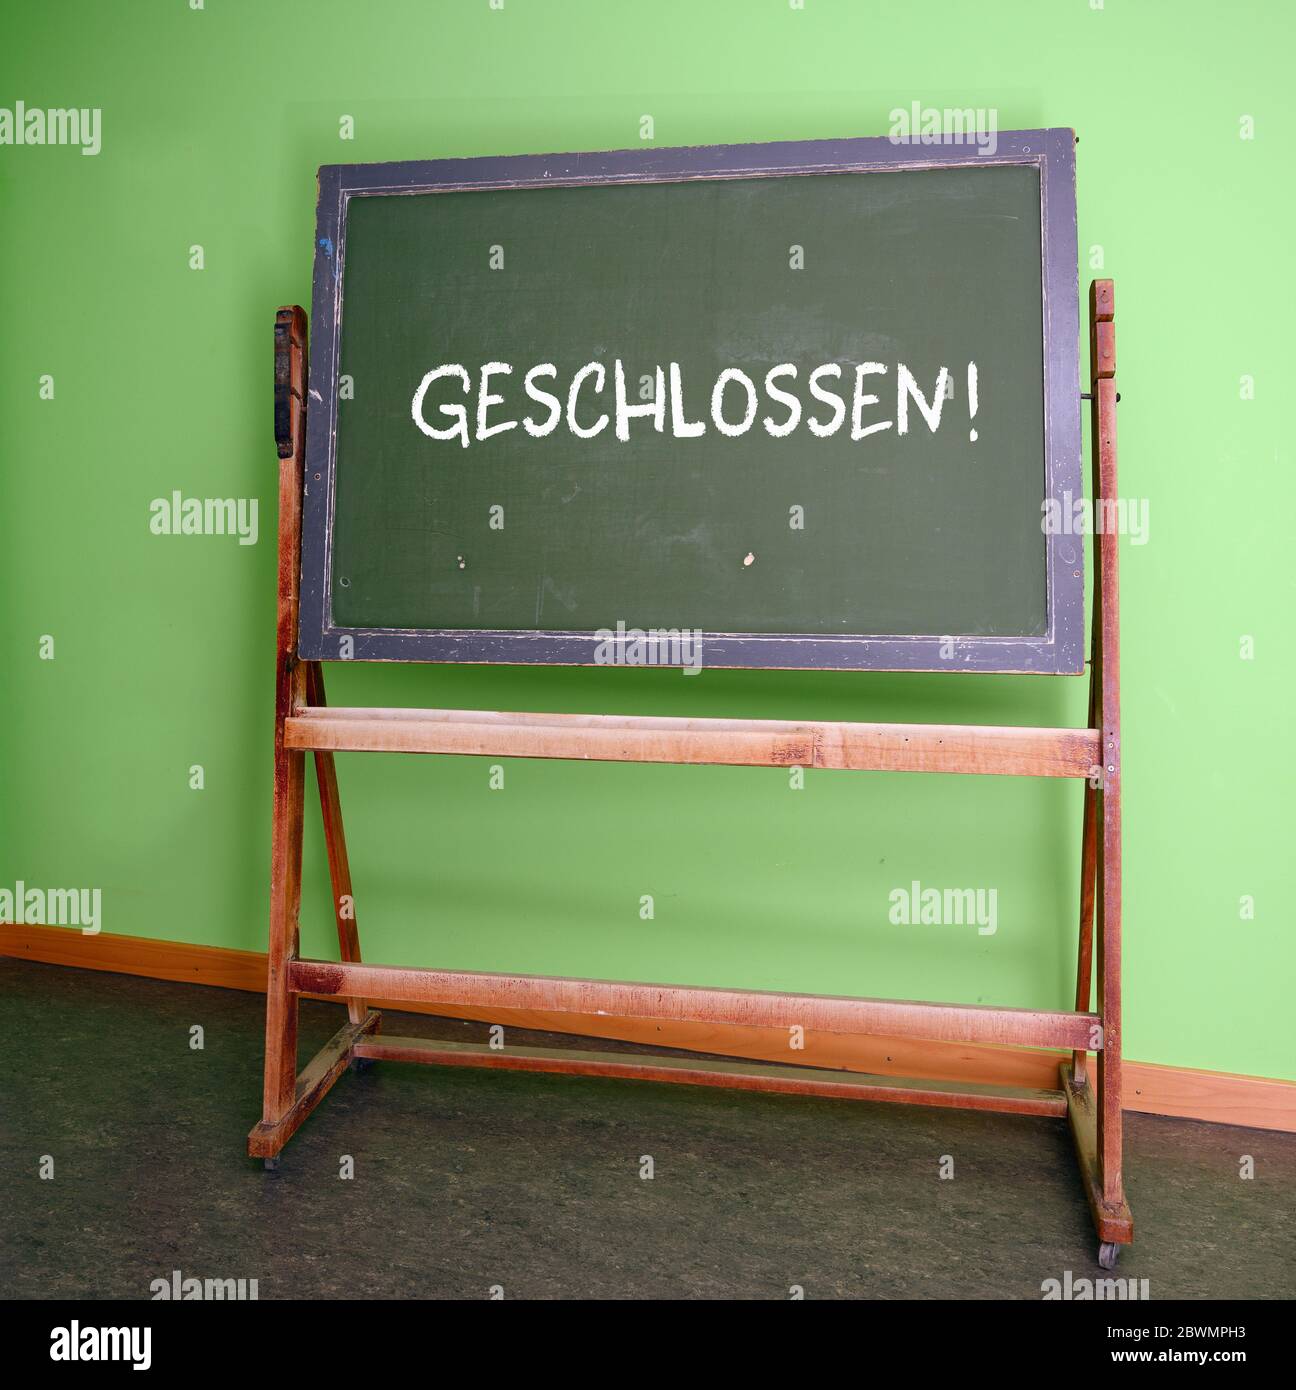 Das deutsche Wort geschlossen, also geschlossen, auf einer alten Schulchalkboard, symbolisiert die Schließung aller Schulen bei der Infektionsgefahr mit dem c Stockfoto